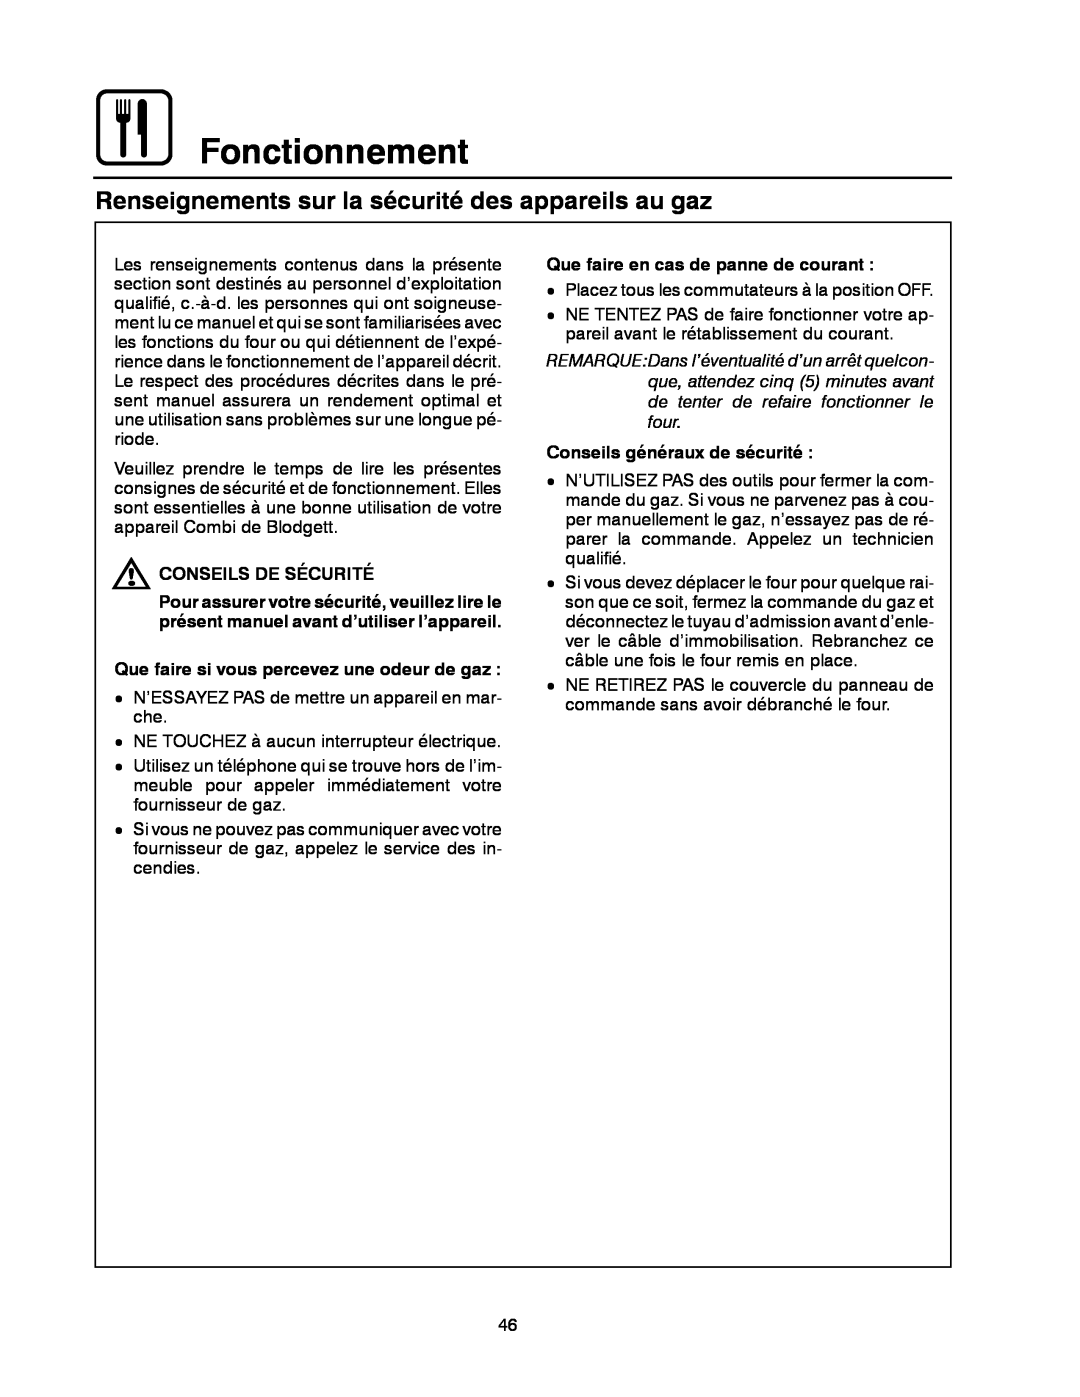 Blodgett BC-20G manual Fonctionnement, Renseignements sur la sécurité des appareils au gaz, Conseils De Sécurité 